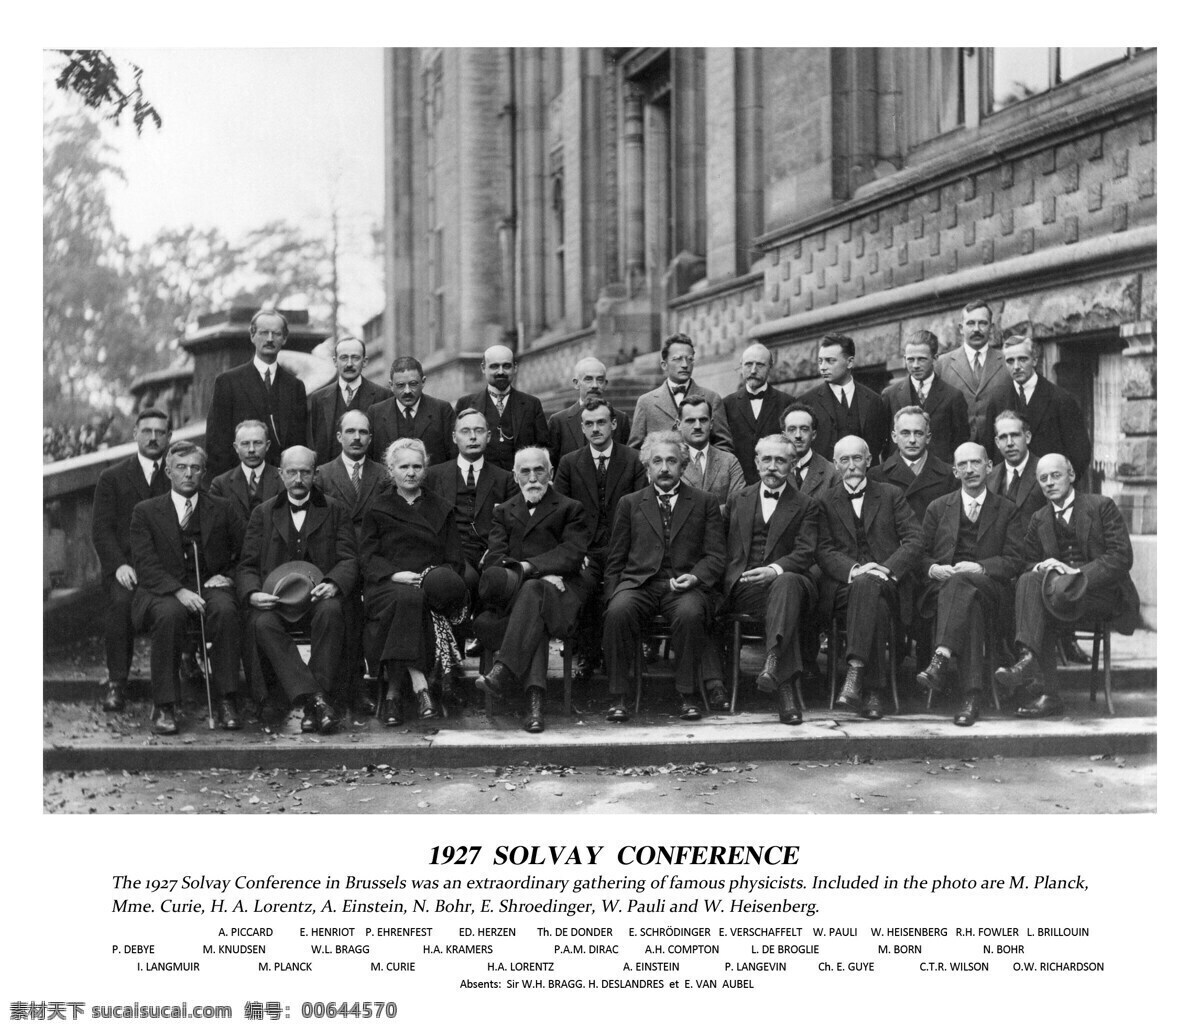 地球 上 智慧 张 照片 1927 索尔 维 会议 solvay 爱因斯坦 居里夫人 薛定谔 普朗克 朗之万 洛仑兹 彼得德拜 威廉 亨利 布 喇 格 玻恩 人物图库 人物摄影 珍贵 老照片 地球上1 摄影图库